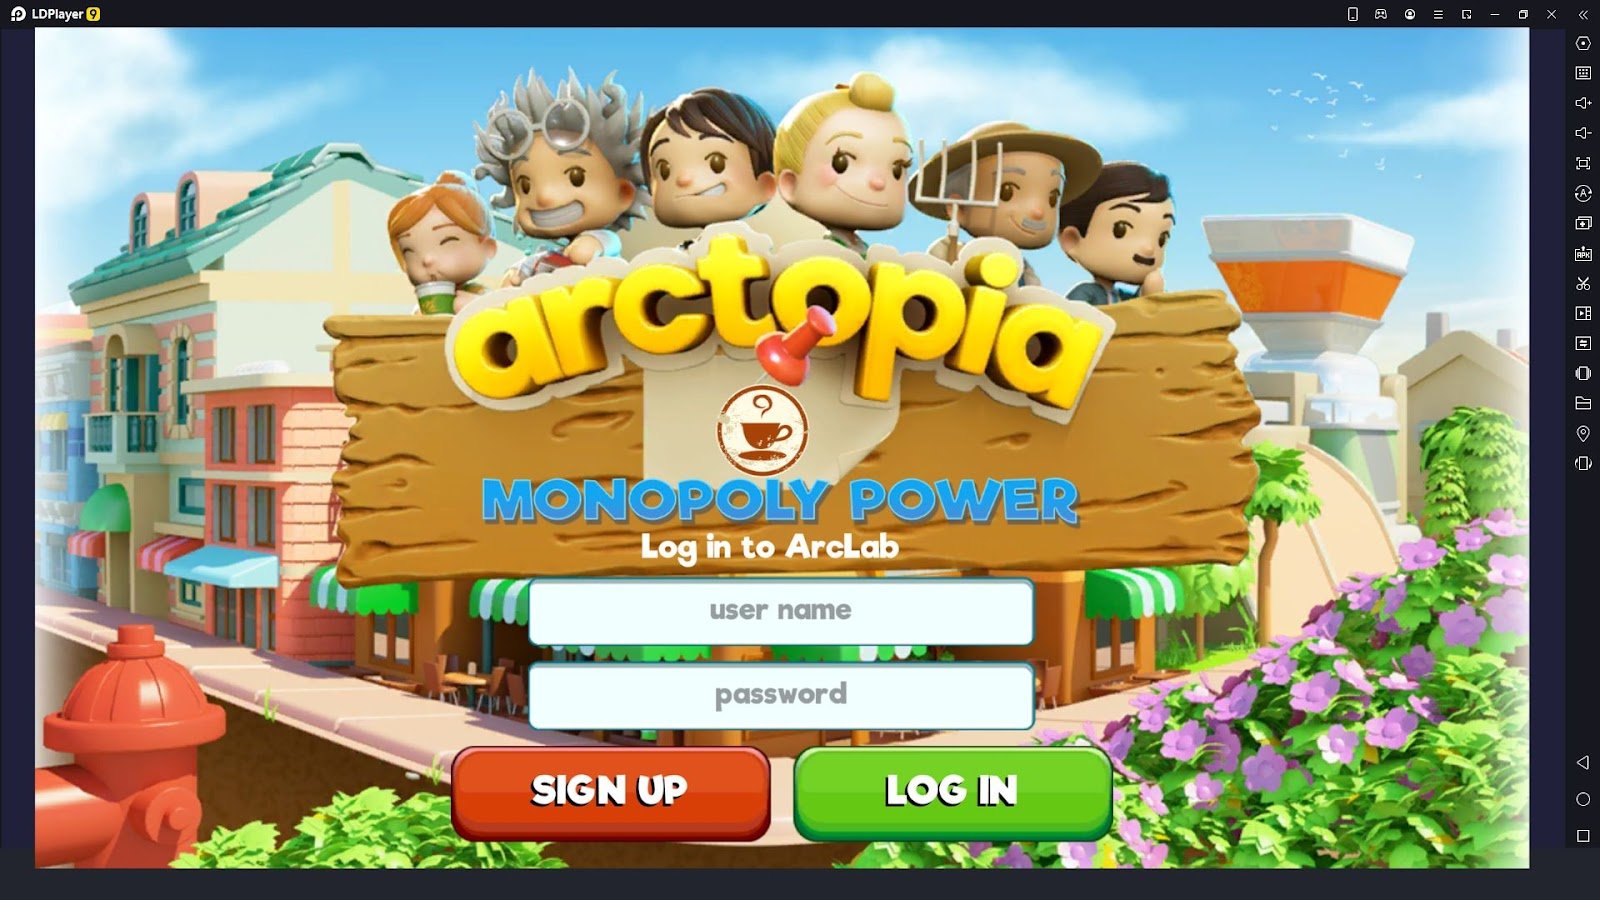 Arctopia: Monopoly Power